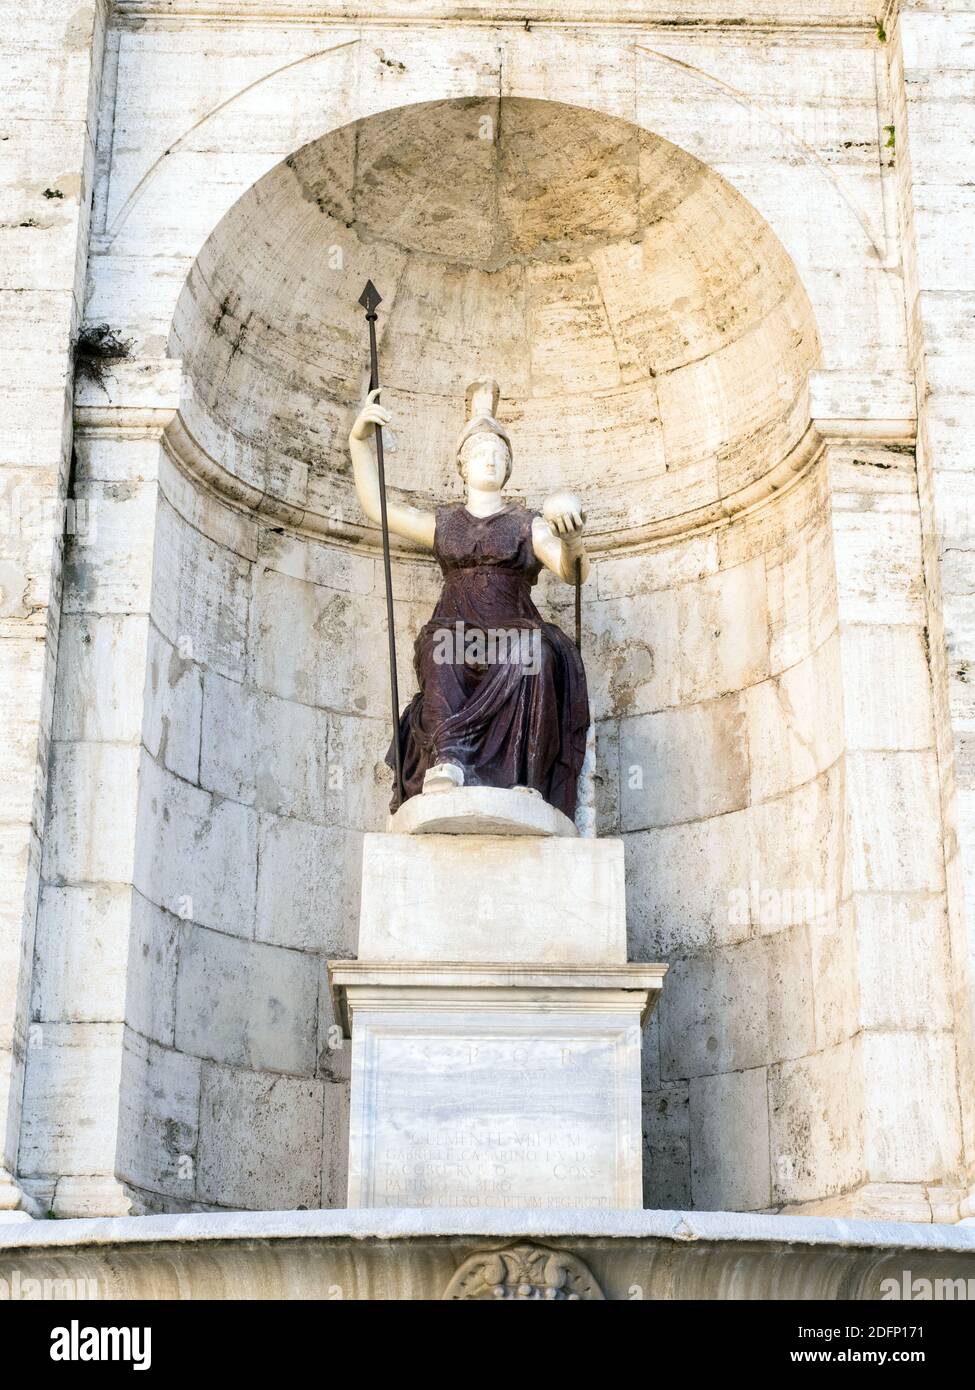 Statue of the goddess Rome (Dea Roma) in Campidoglio square - Rome, Italy Stock Photo